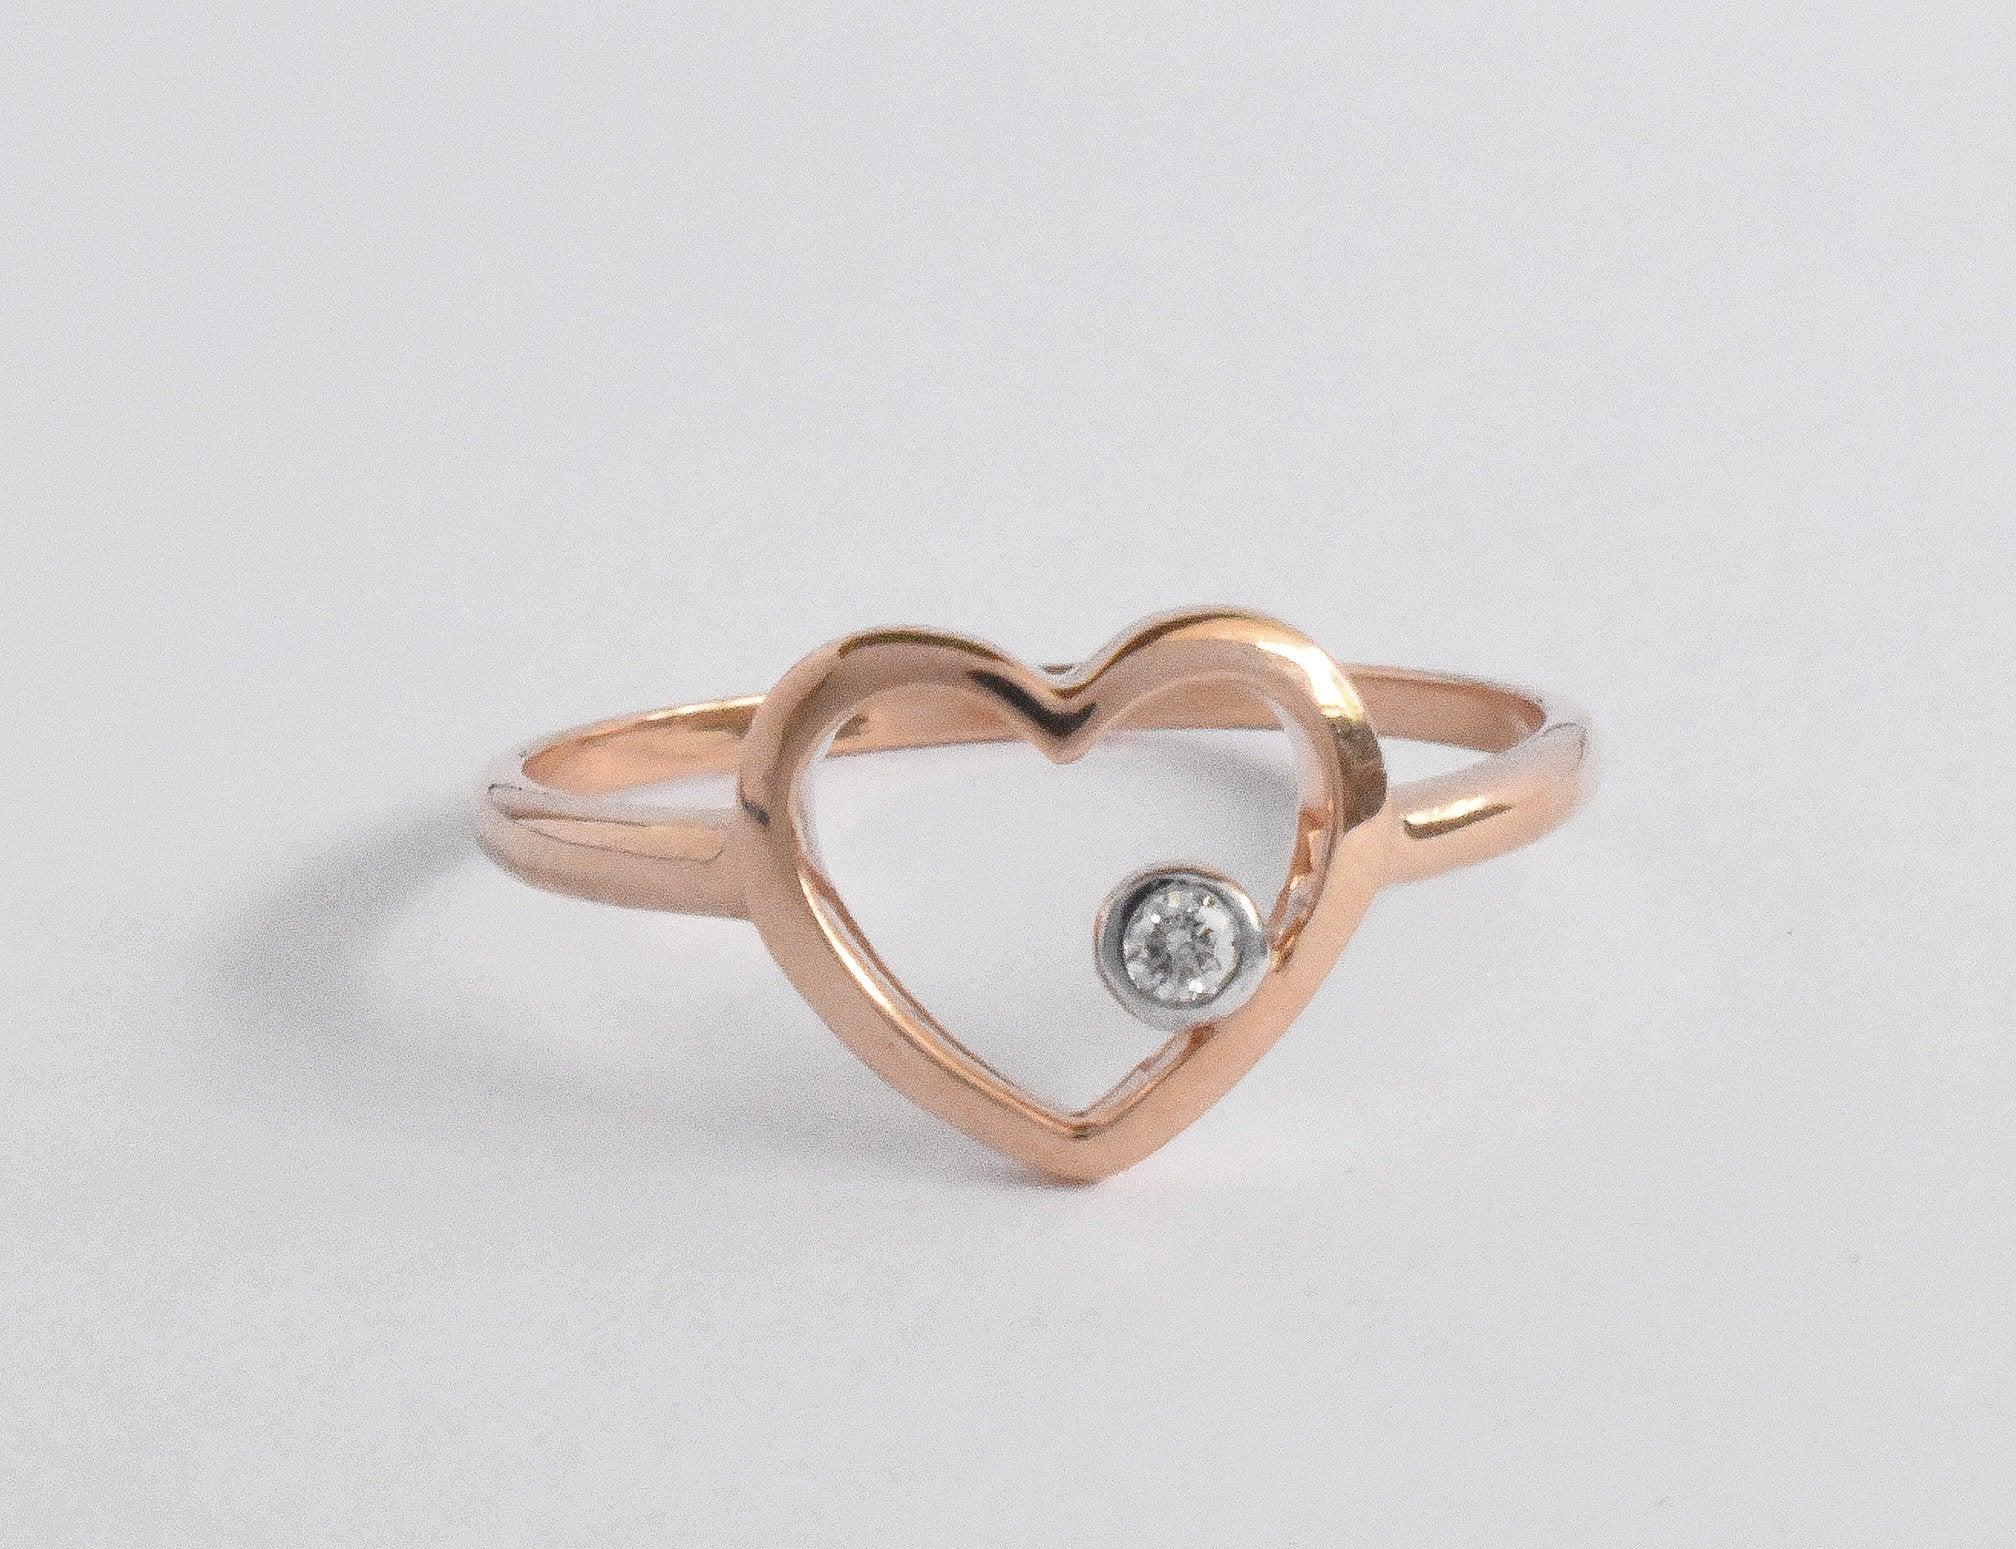 For Sale:  14k Rose Gold Diamond Heart Ring Minimal Heart Ring with Bezel Set Diamond 4